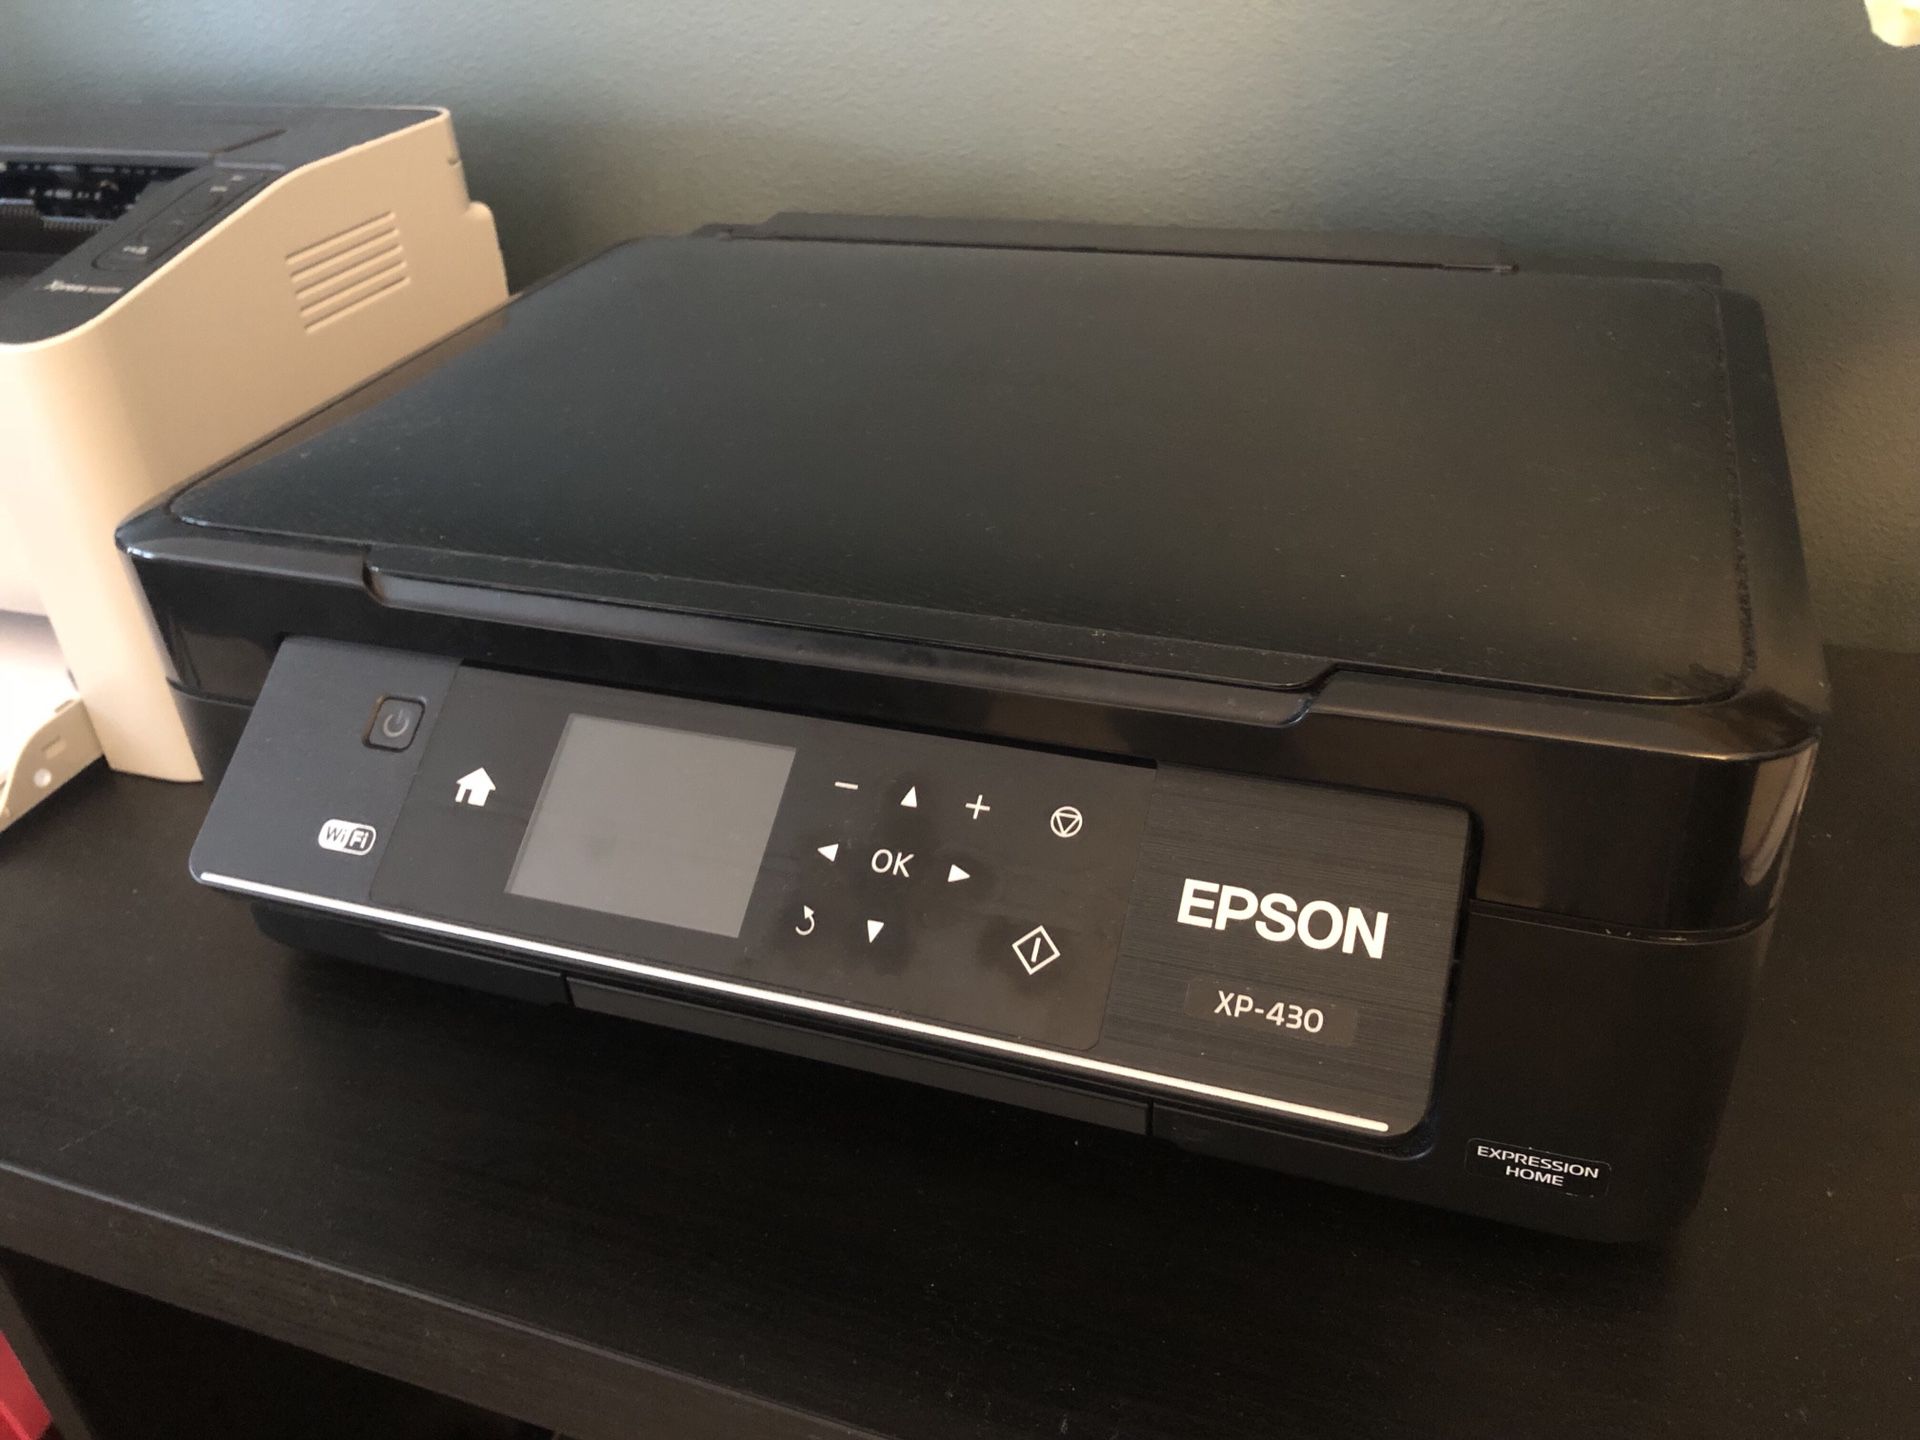 Epson XP-430 printer